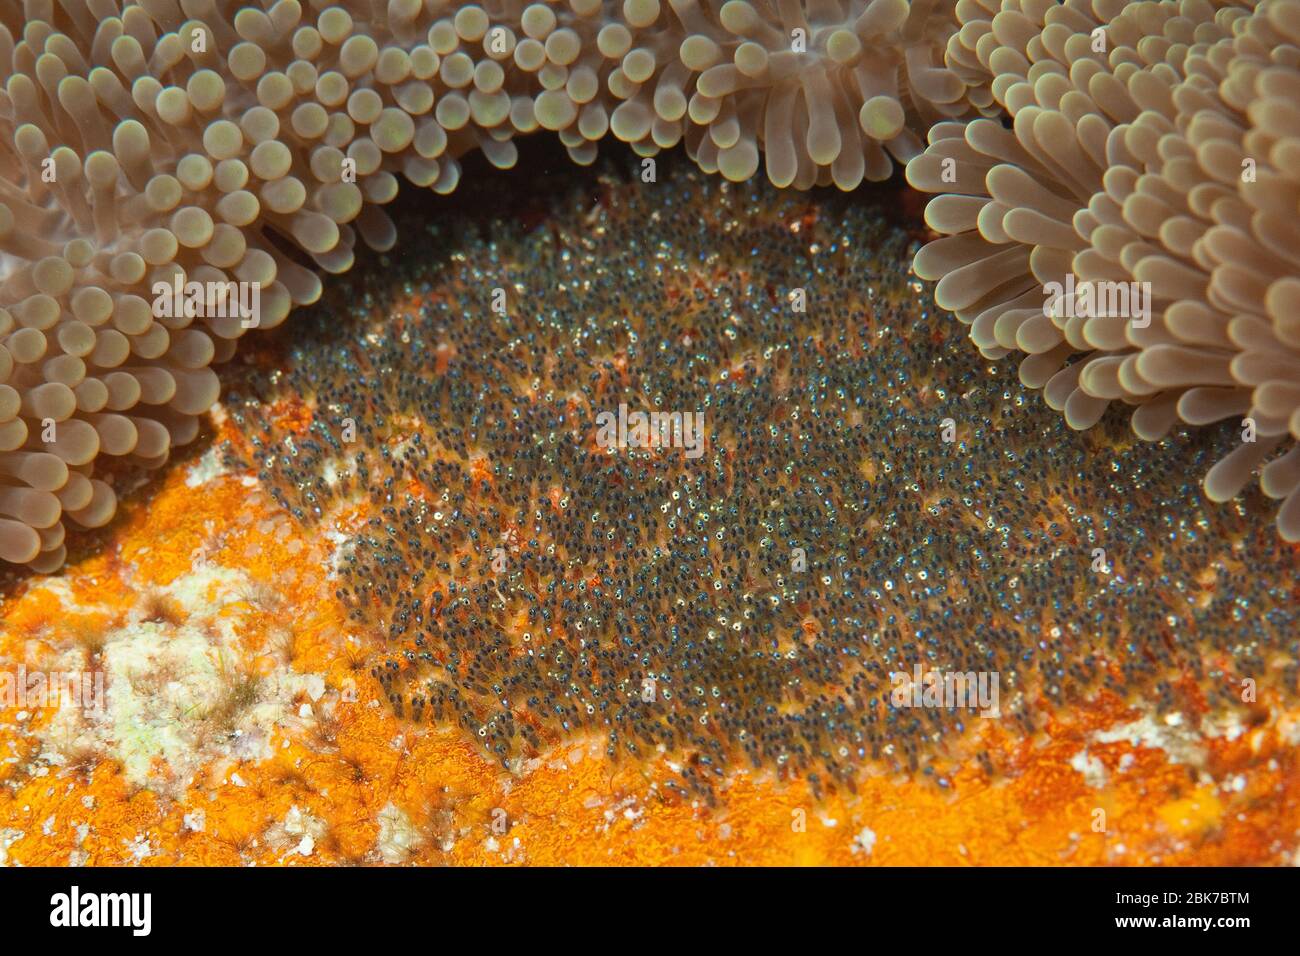 Gelege von Anemonenfisch (Anfiprion chrysopterus), Eier, Eiablage von Anemonenfisch, Pazifik Foto de stock